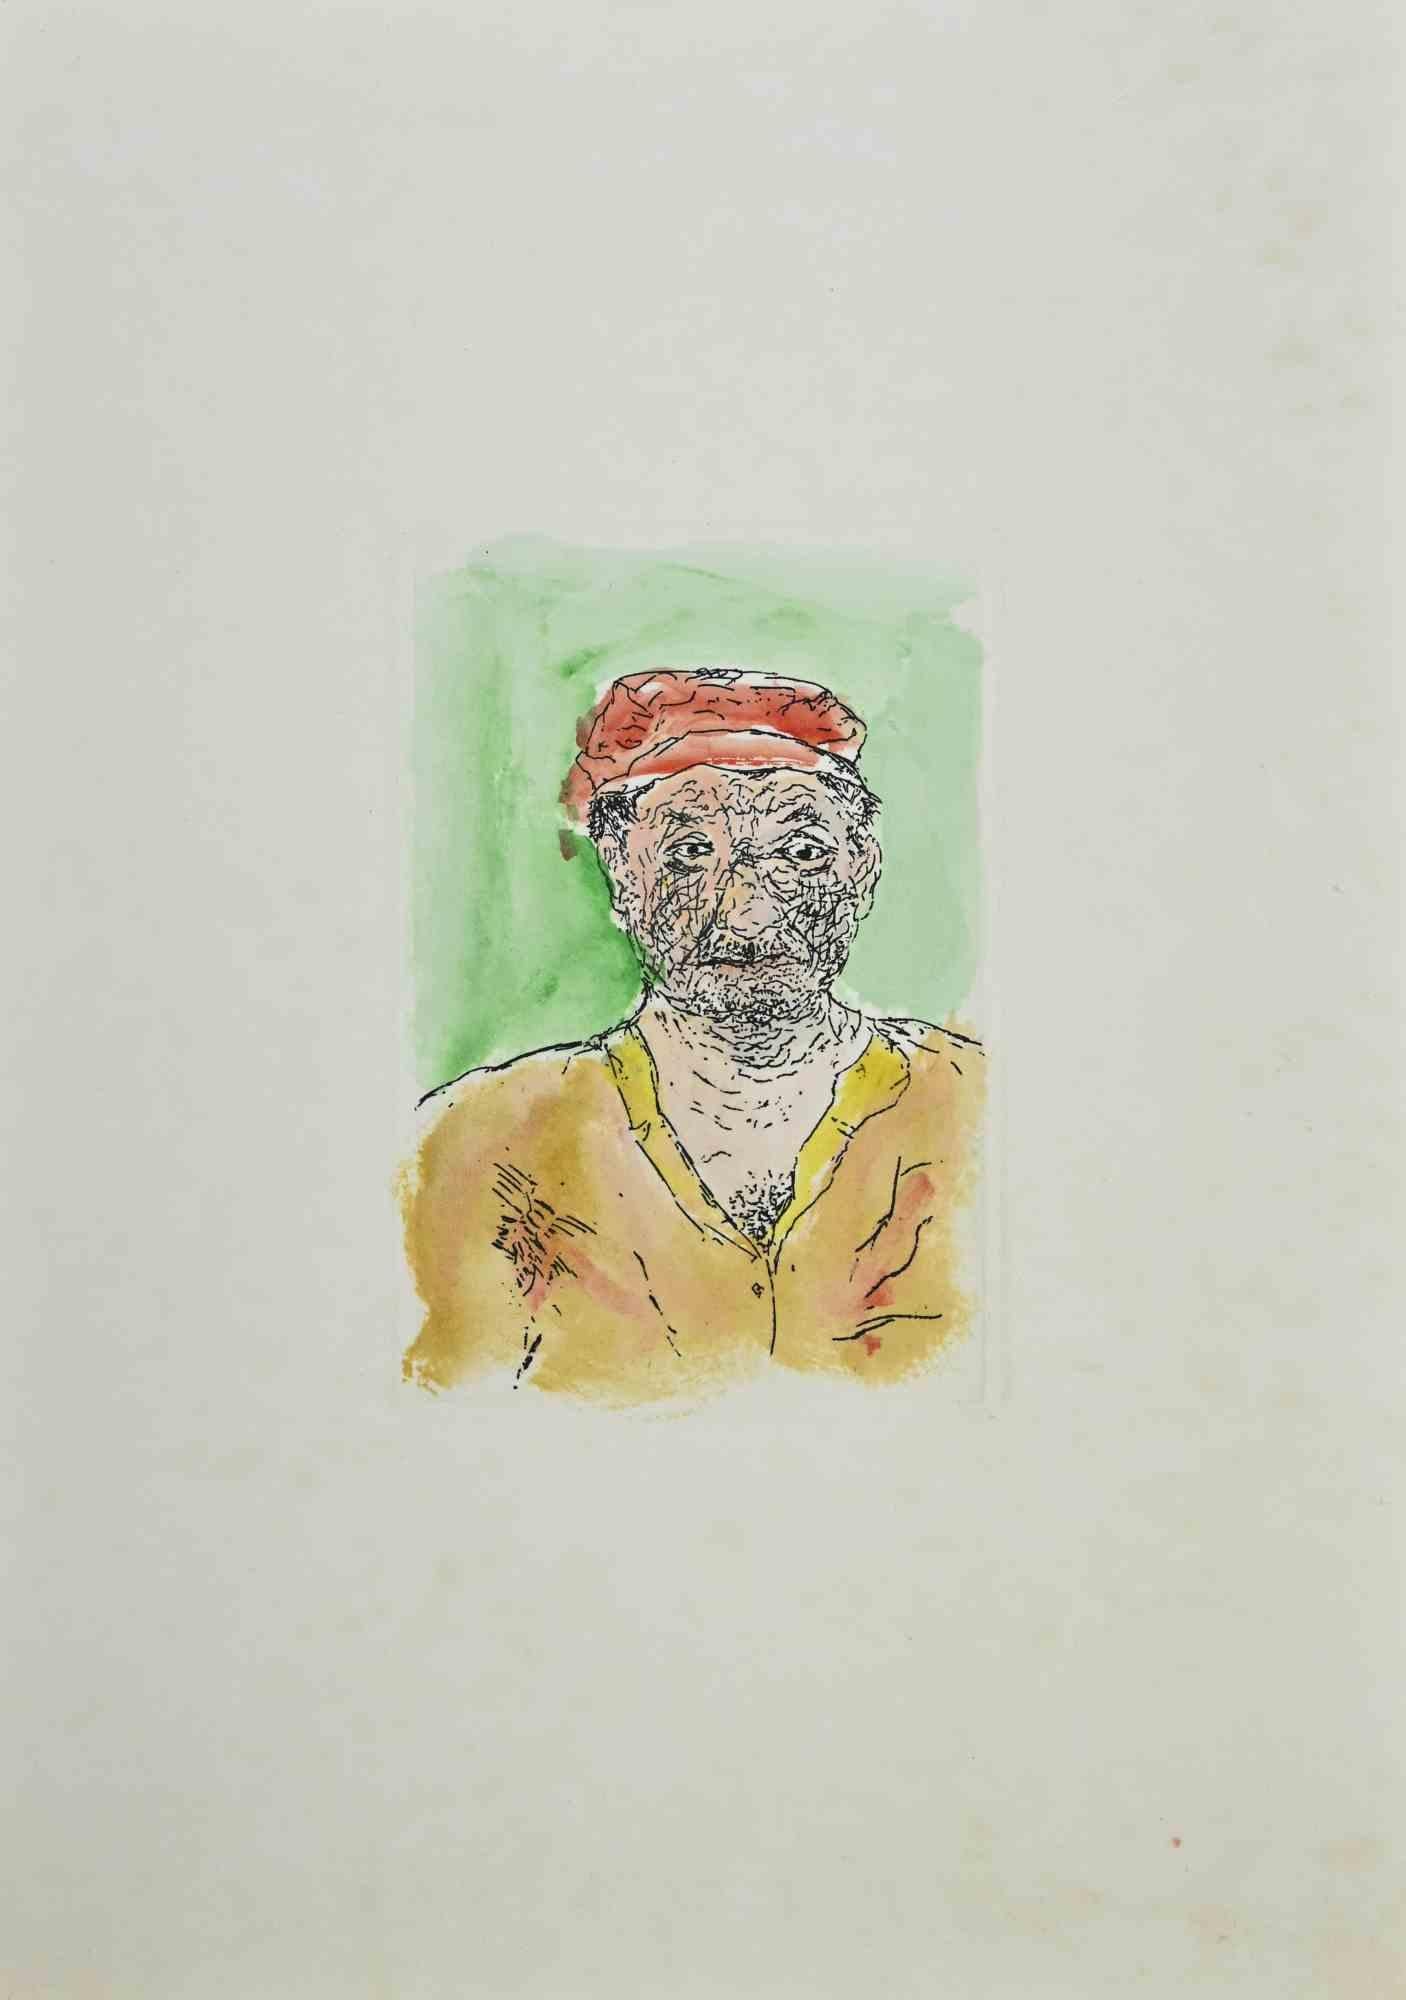 Der Fischer ist ein Kunstwerk von Giovanni Omiccioli (25. Februar 1901 - 1. März 1975).

Farbige Original-Radierung auf Karton.

Der Künstler möchte eine ausgewogene Komposition durch Präzision und kongruente Farben definieren. 

Gute